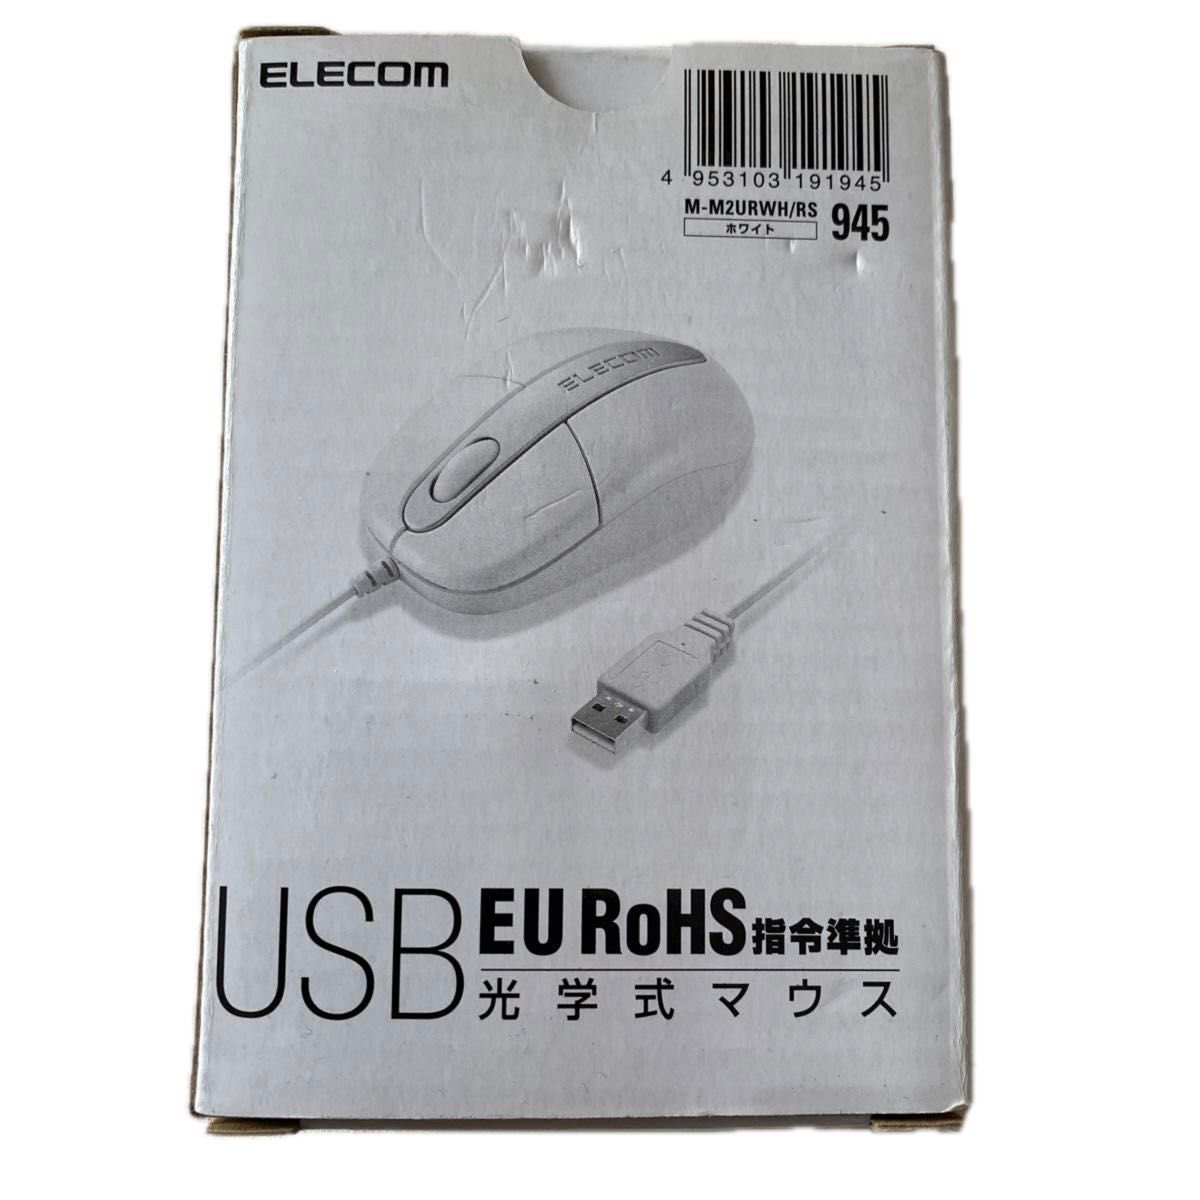 EU RoHS指令準拠 光学式USBマウス M-M2URWH/RS （ホワイト）